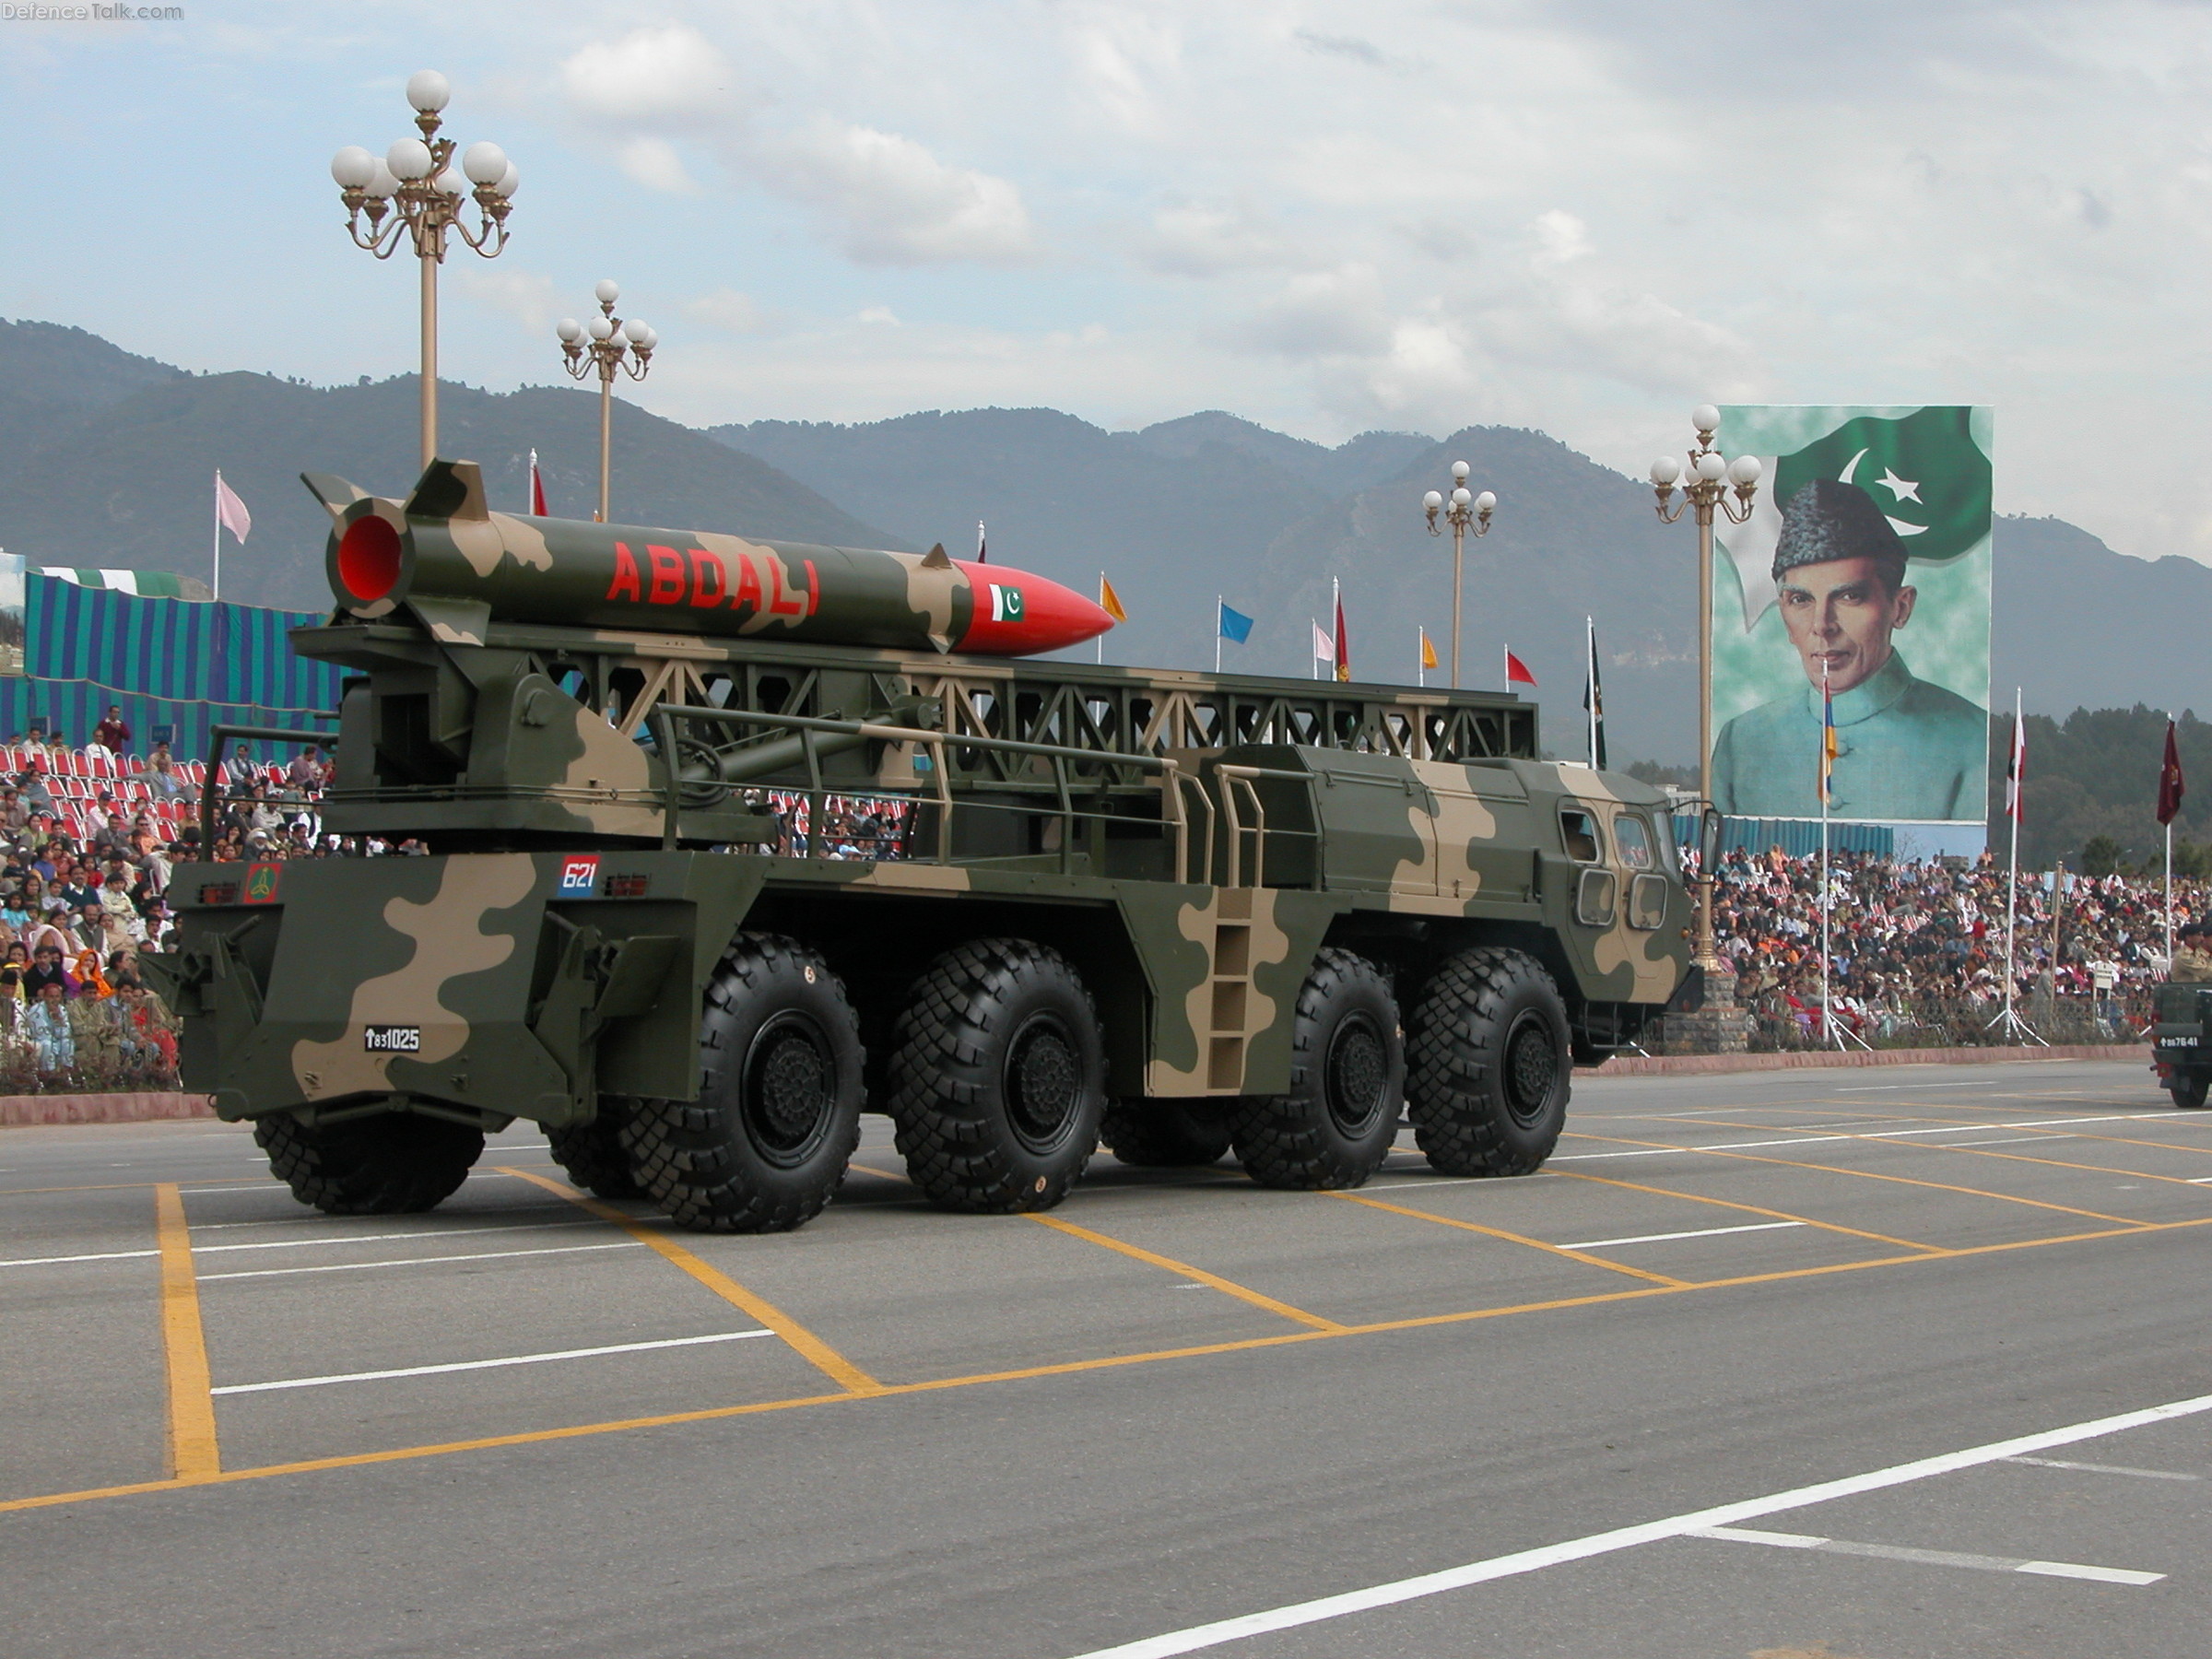 Abdali missile - Pakistan